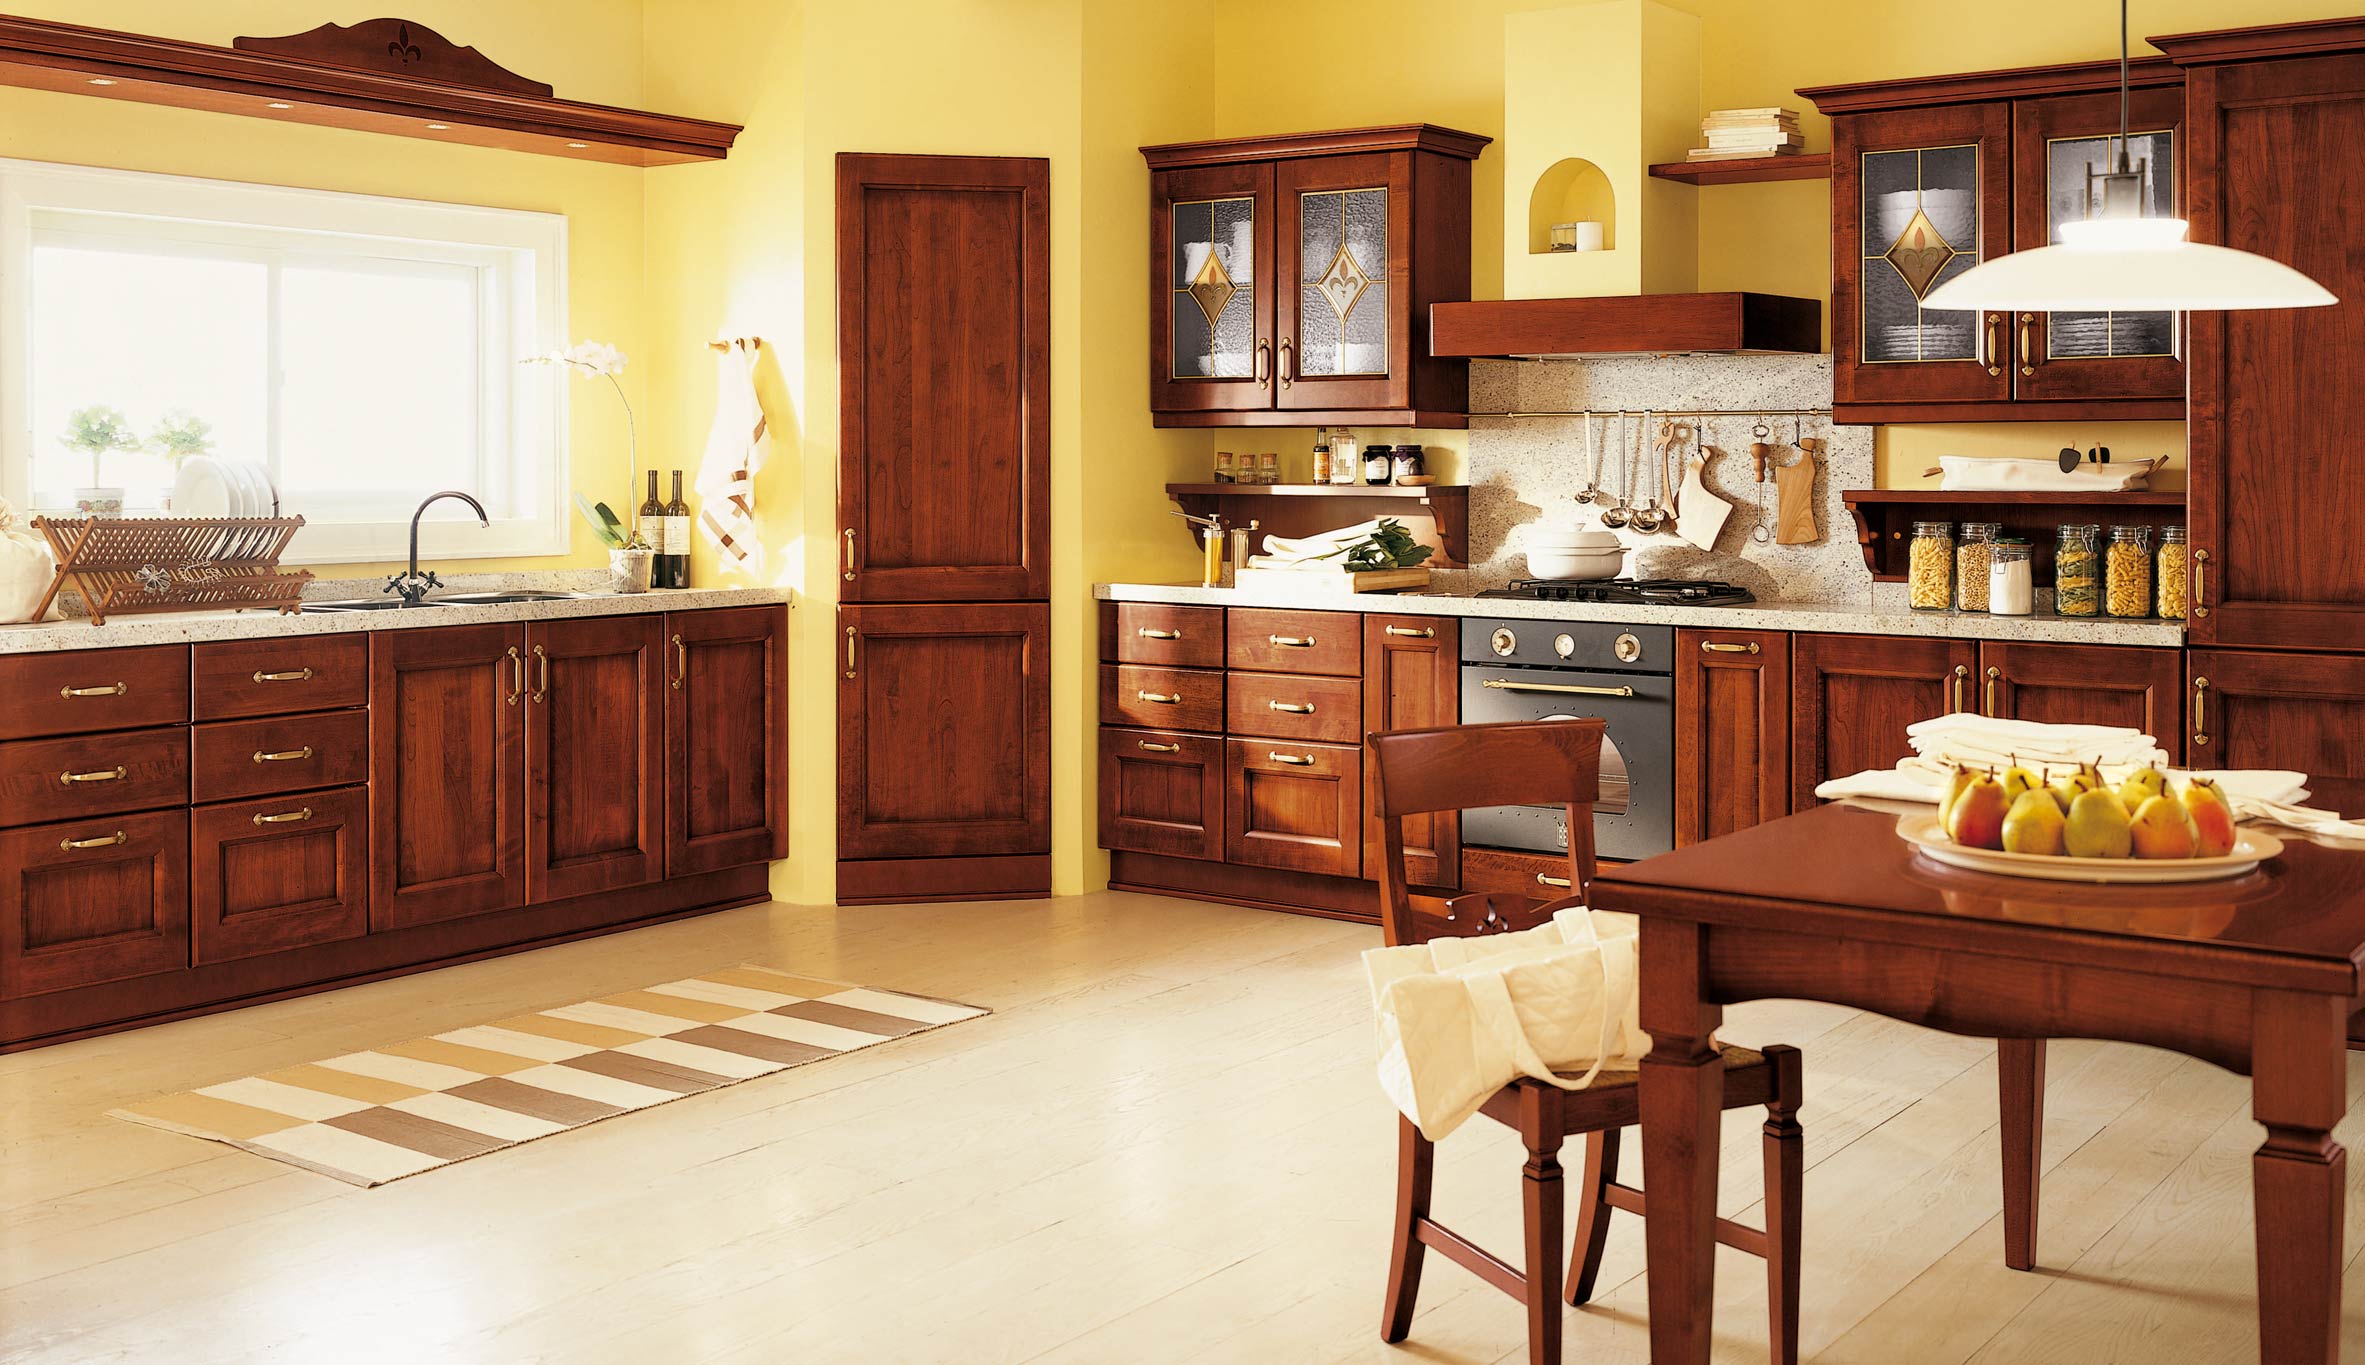 Brown Kitchen Interior Design photo - 2